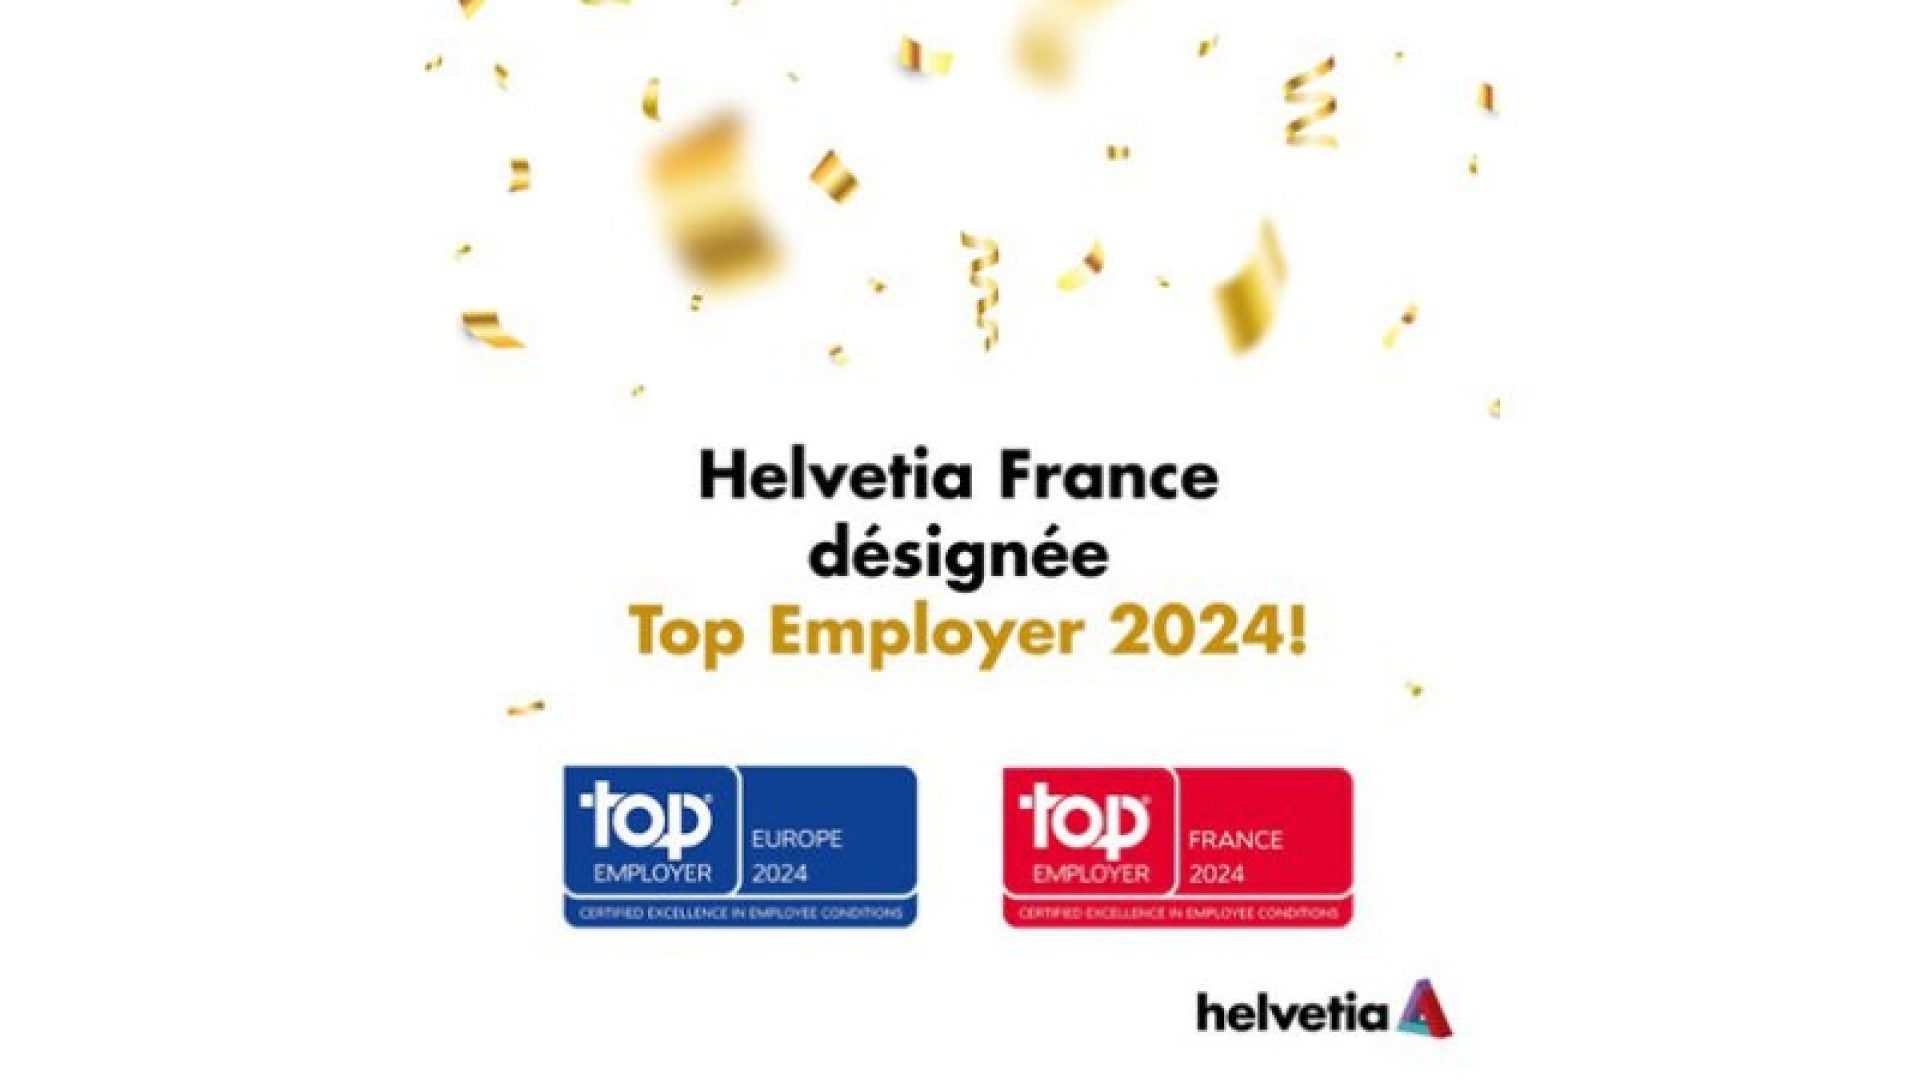 helvetia-france-est-certifiee-top-employer-2024-01